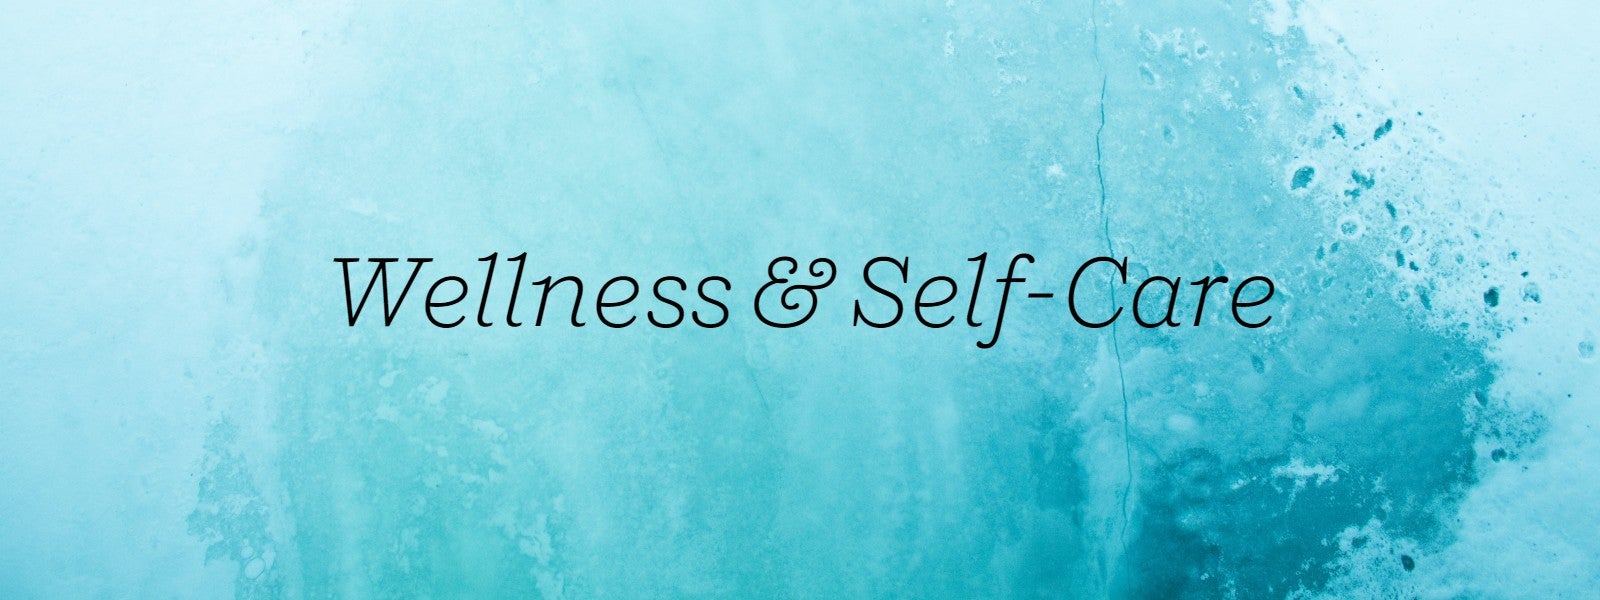 Wellness & Self-Care